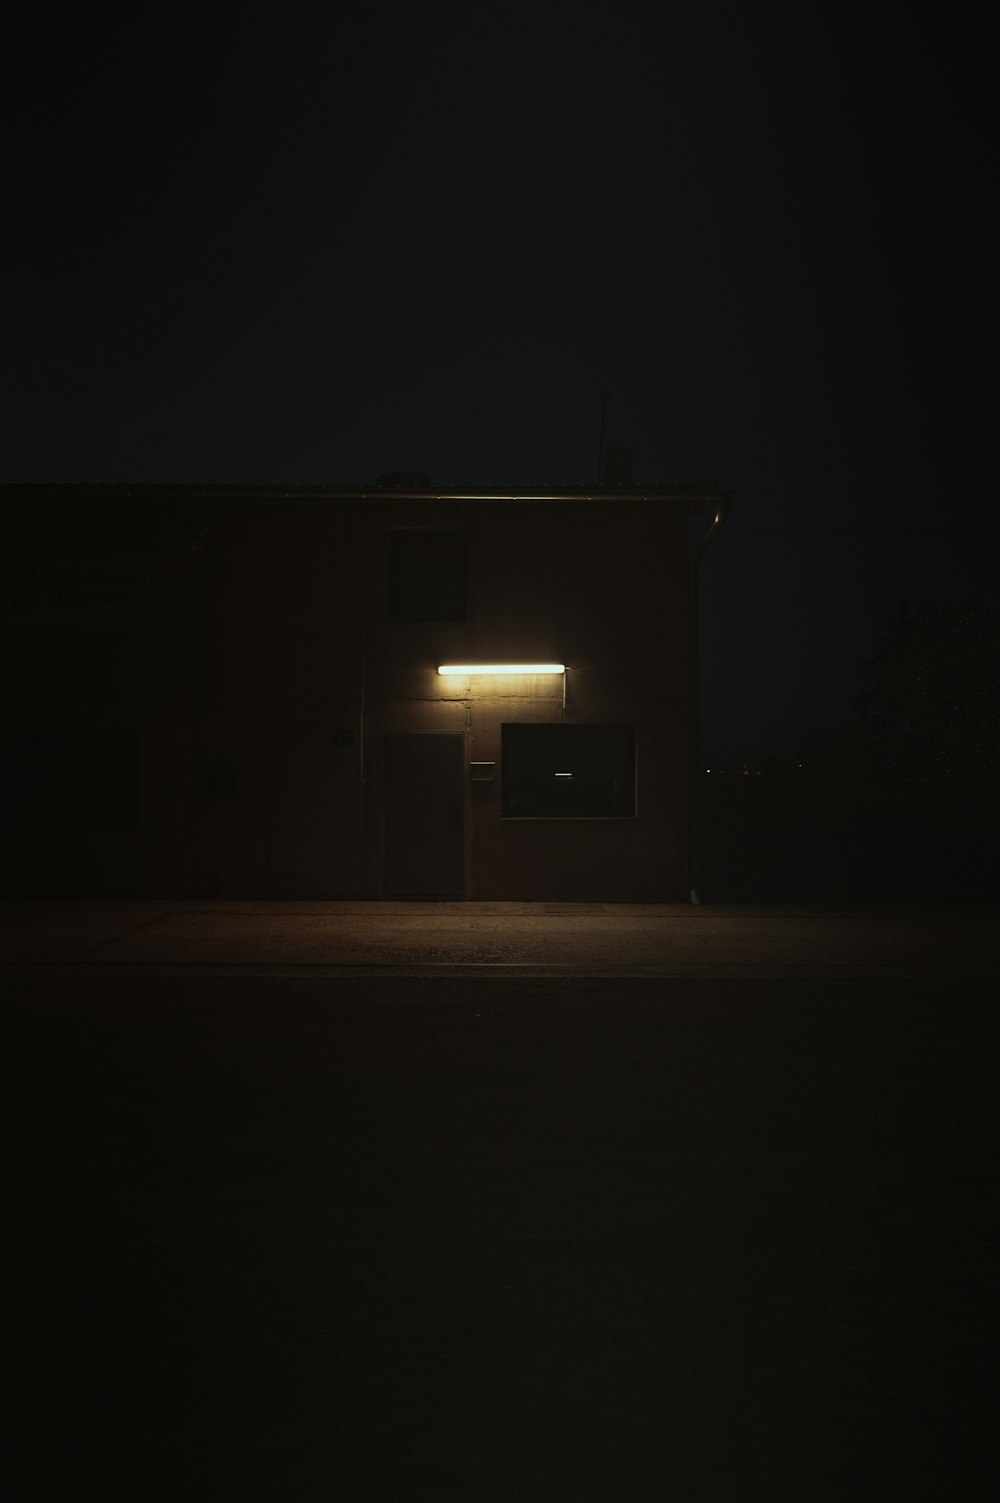 Ein Gebäude, das nachts bei eingeschaltetem Licht beleuchtet wird